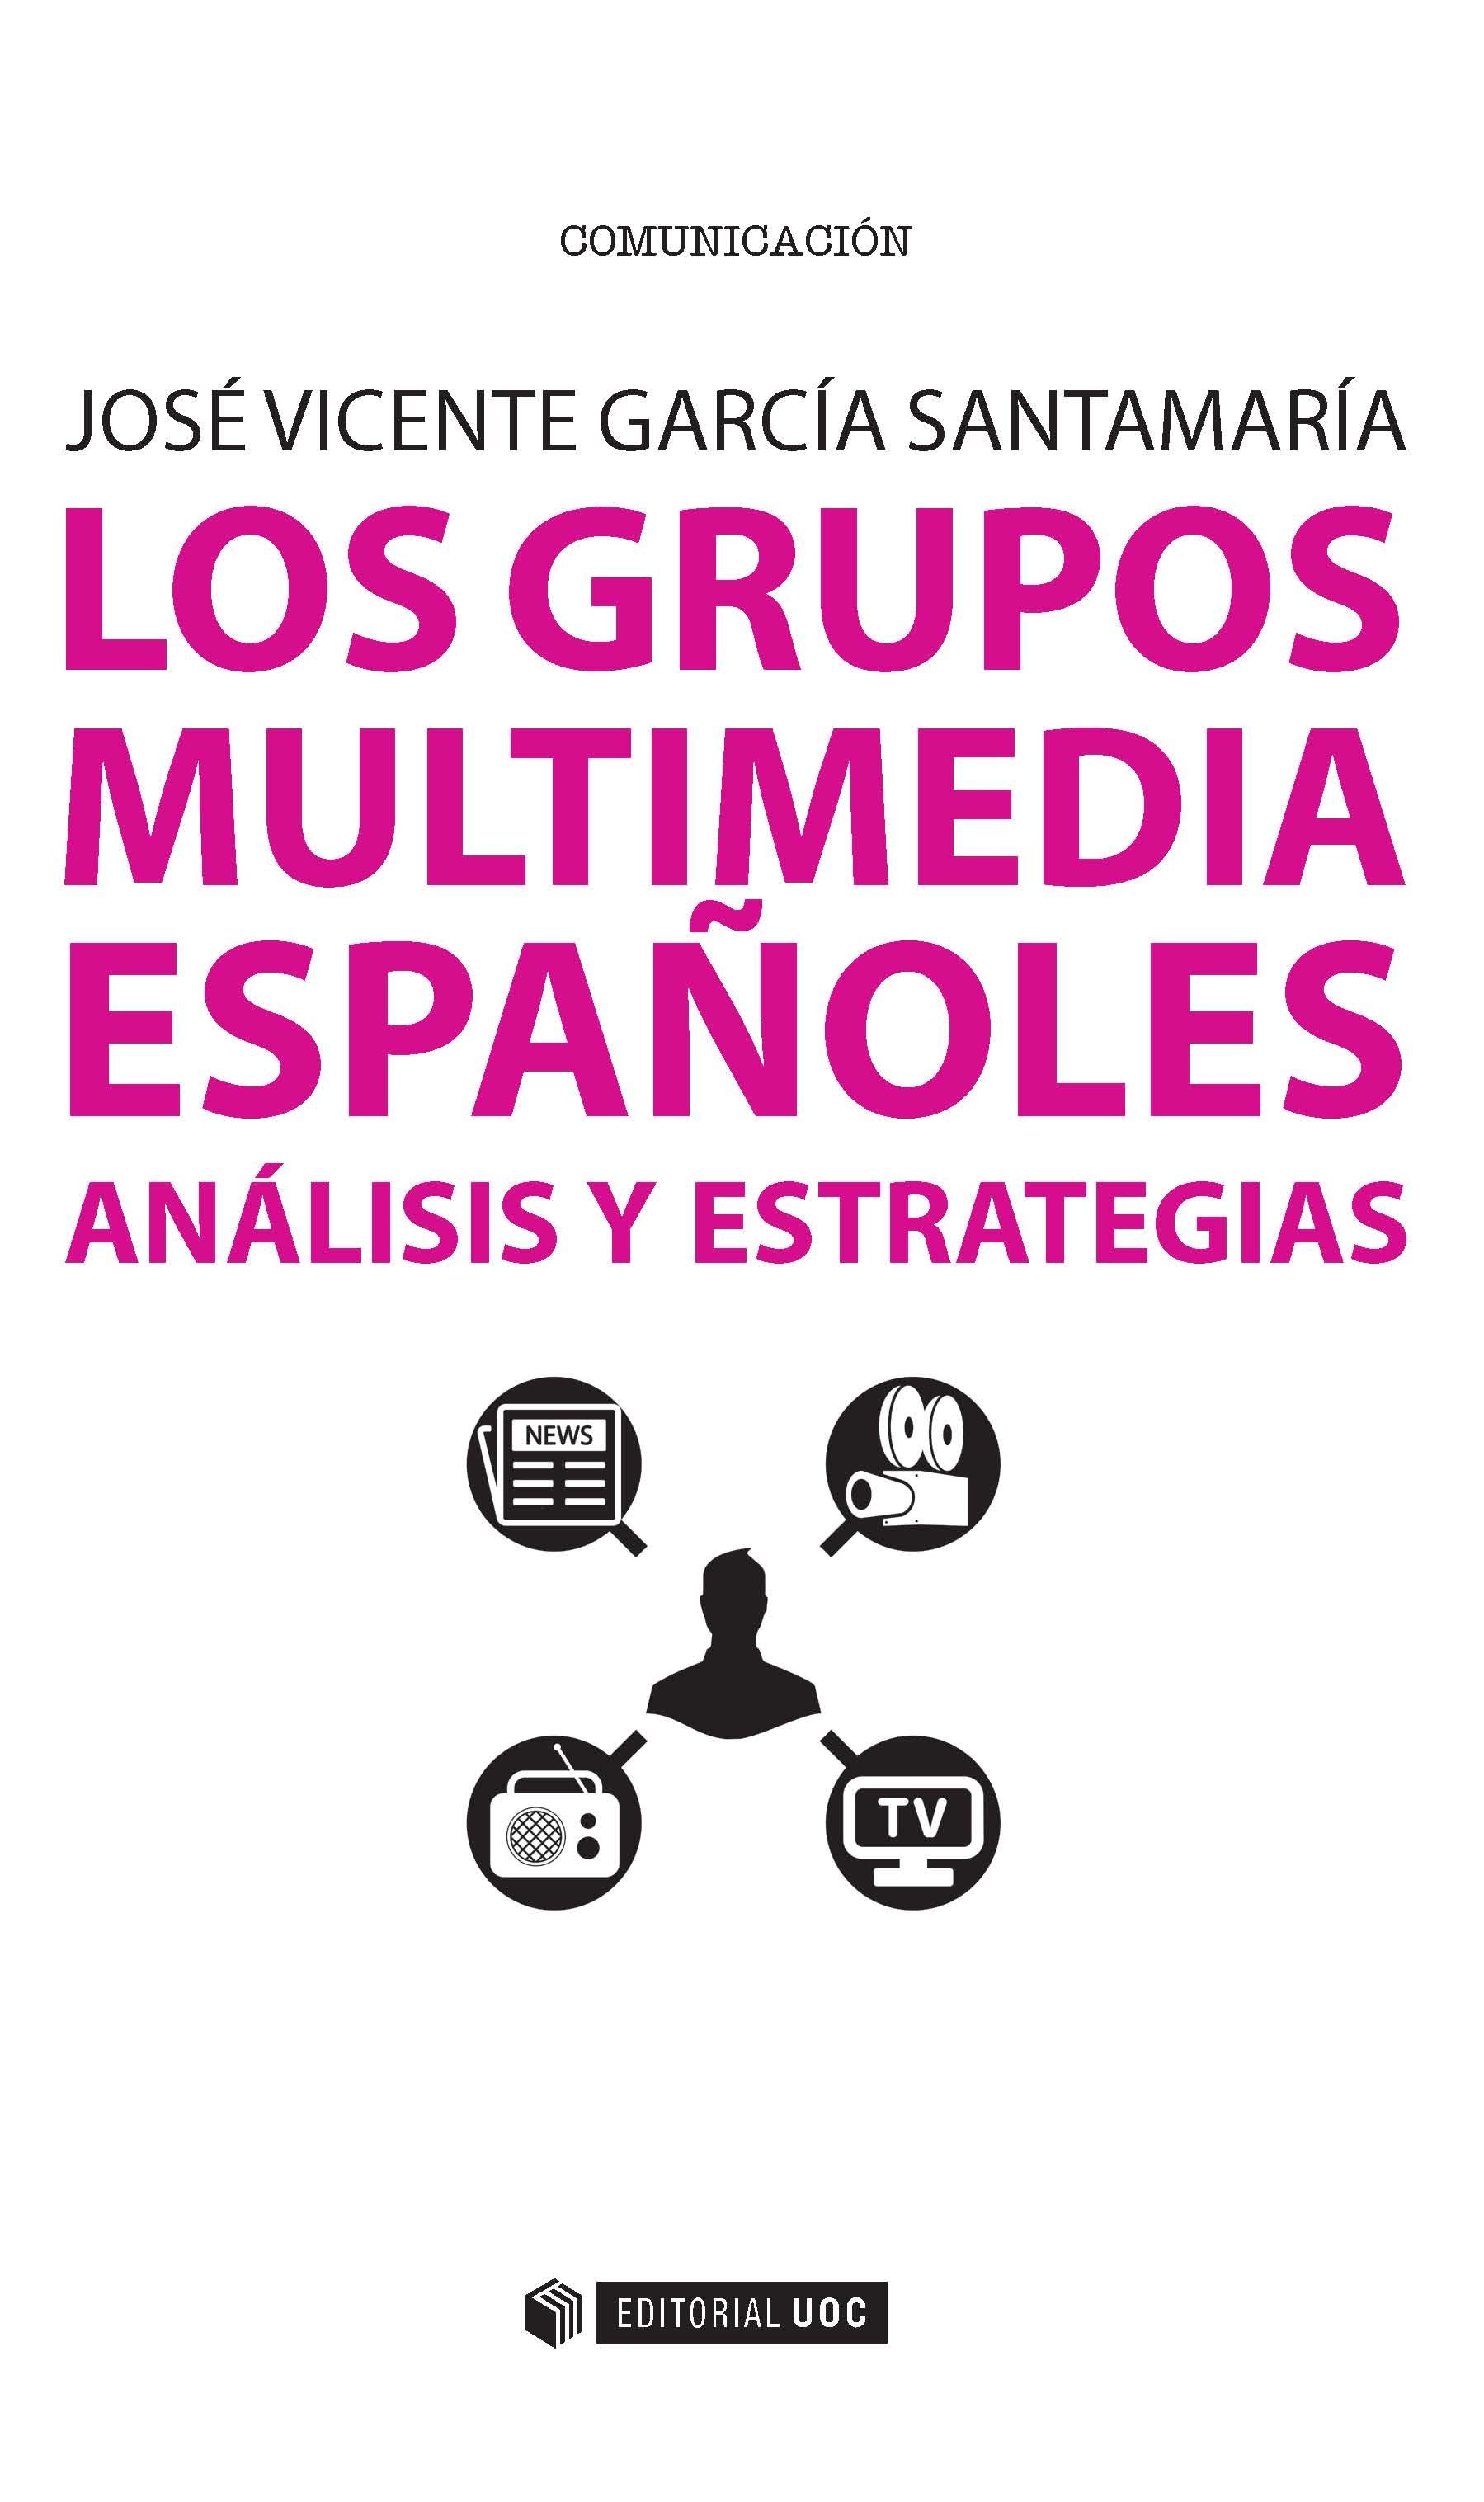 LOS GRUPOS MULTIMEDIA ESPAÑOLES: ANALISIS Y ESTRATEGIAS  "Análisis y estrategias"